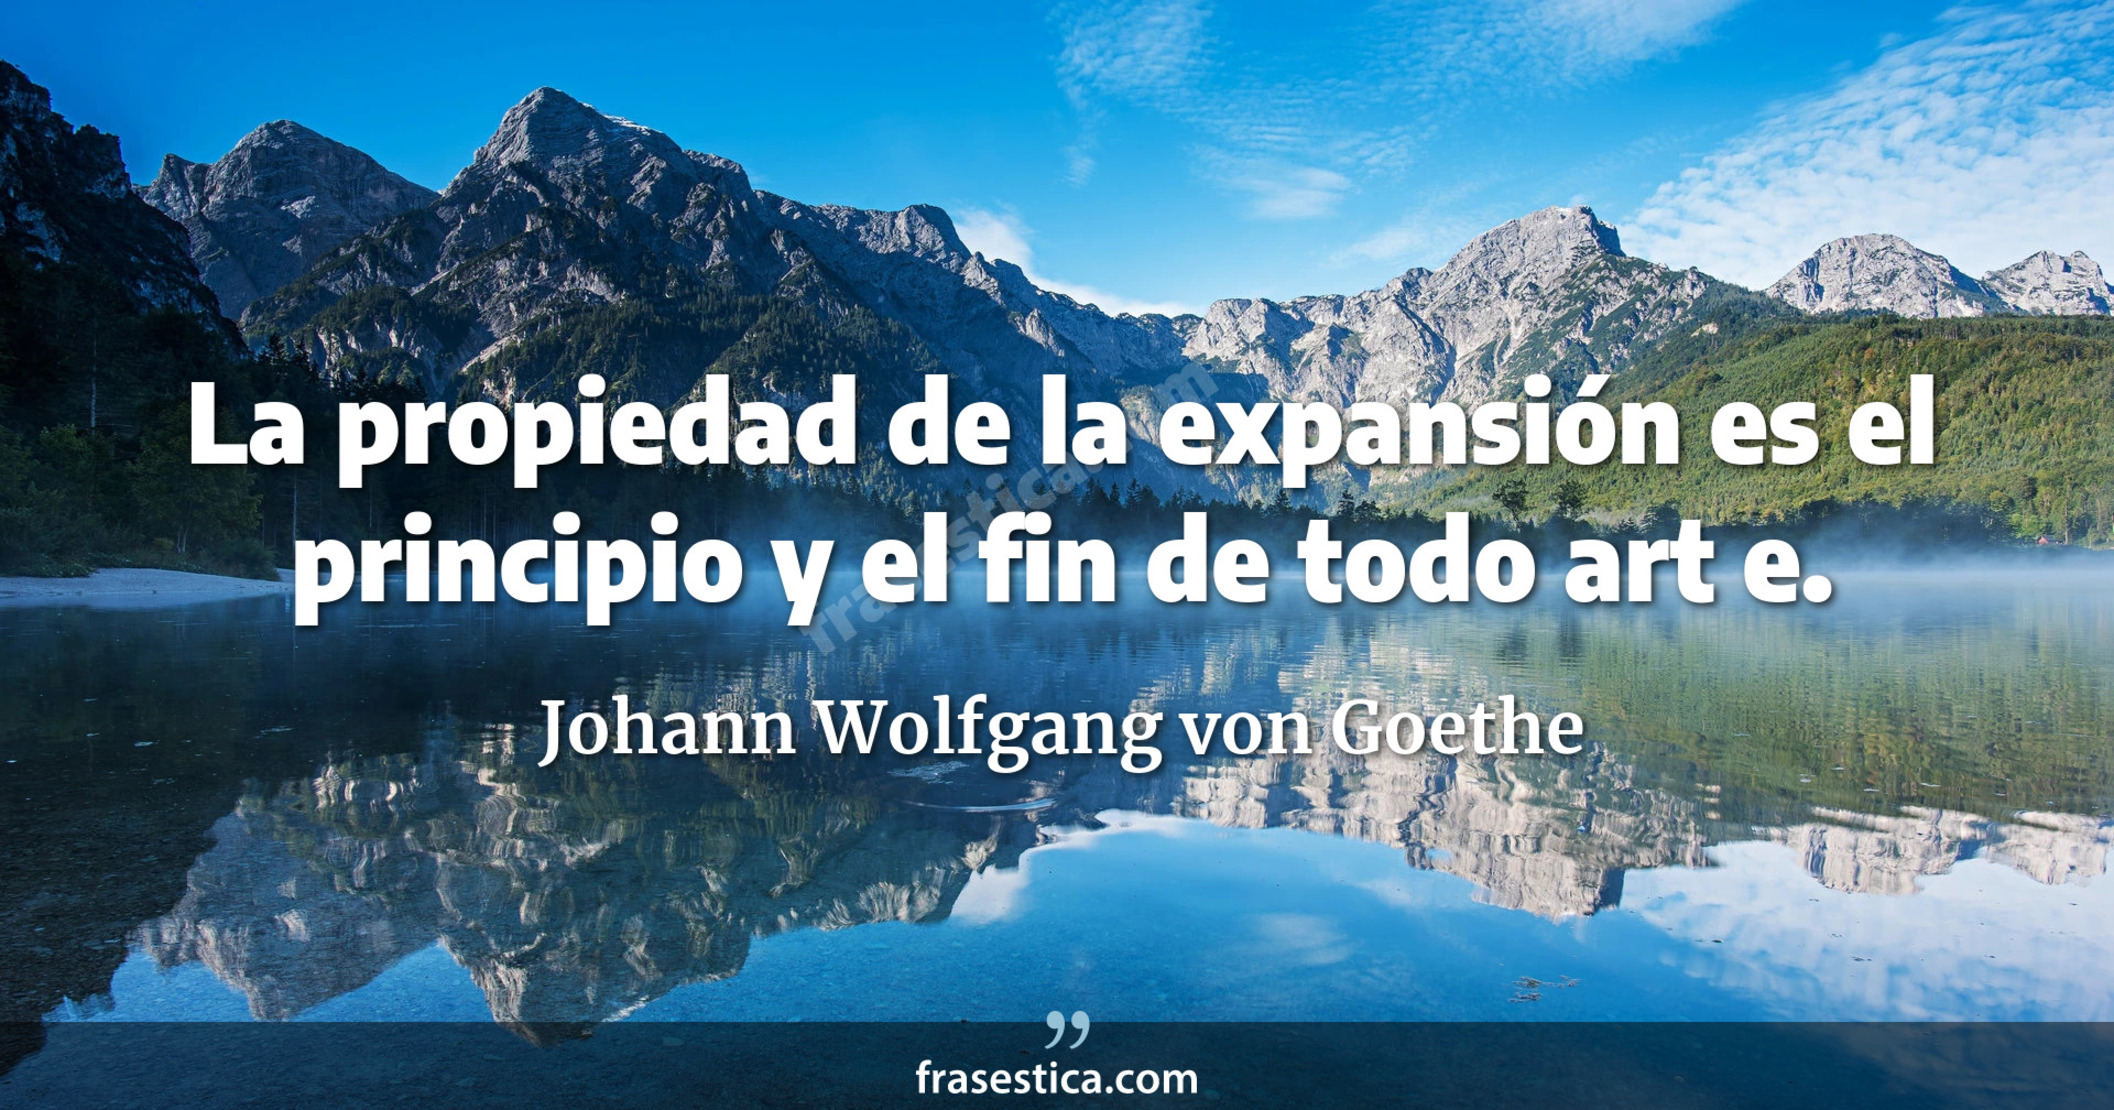 La propiedad de la expansión es el principio y el fin de todo art e. - Johann Wolfgang von Goethe